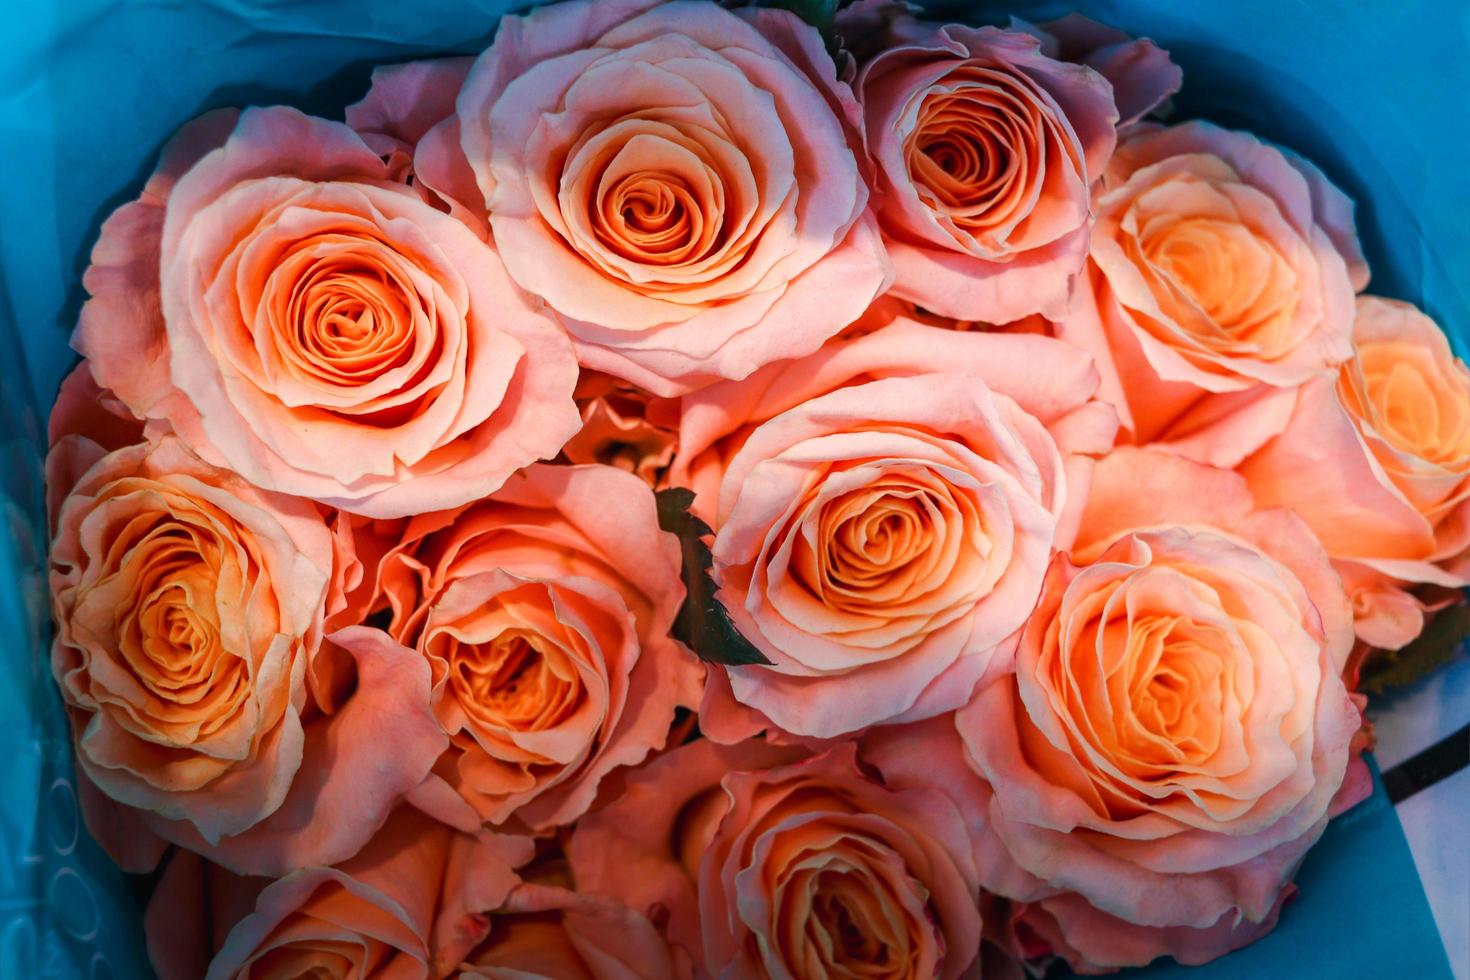 roze mooie roos verpakt in papier te koop bij bloemenmarkt, cadeau op Valentijnsdag. foto